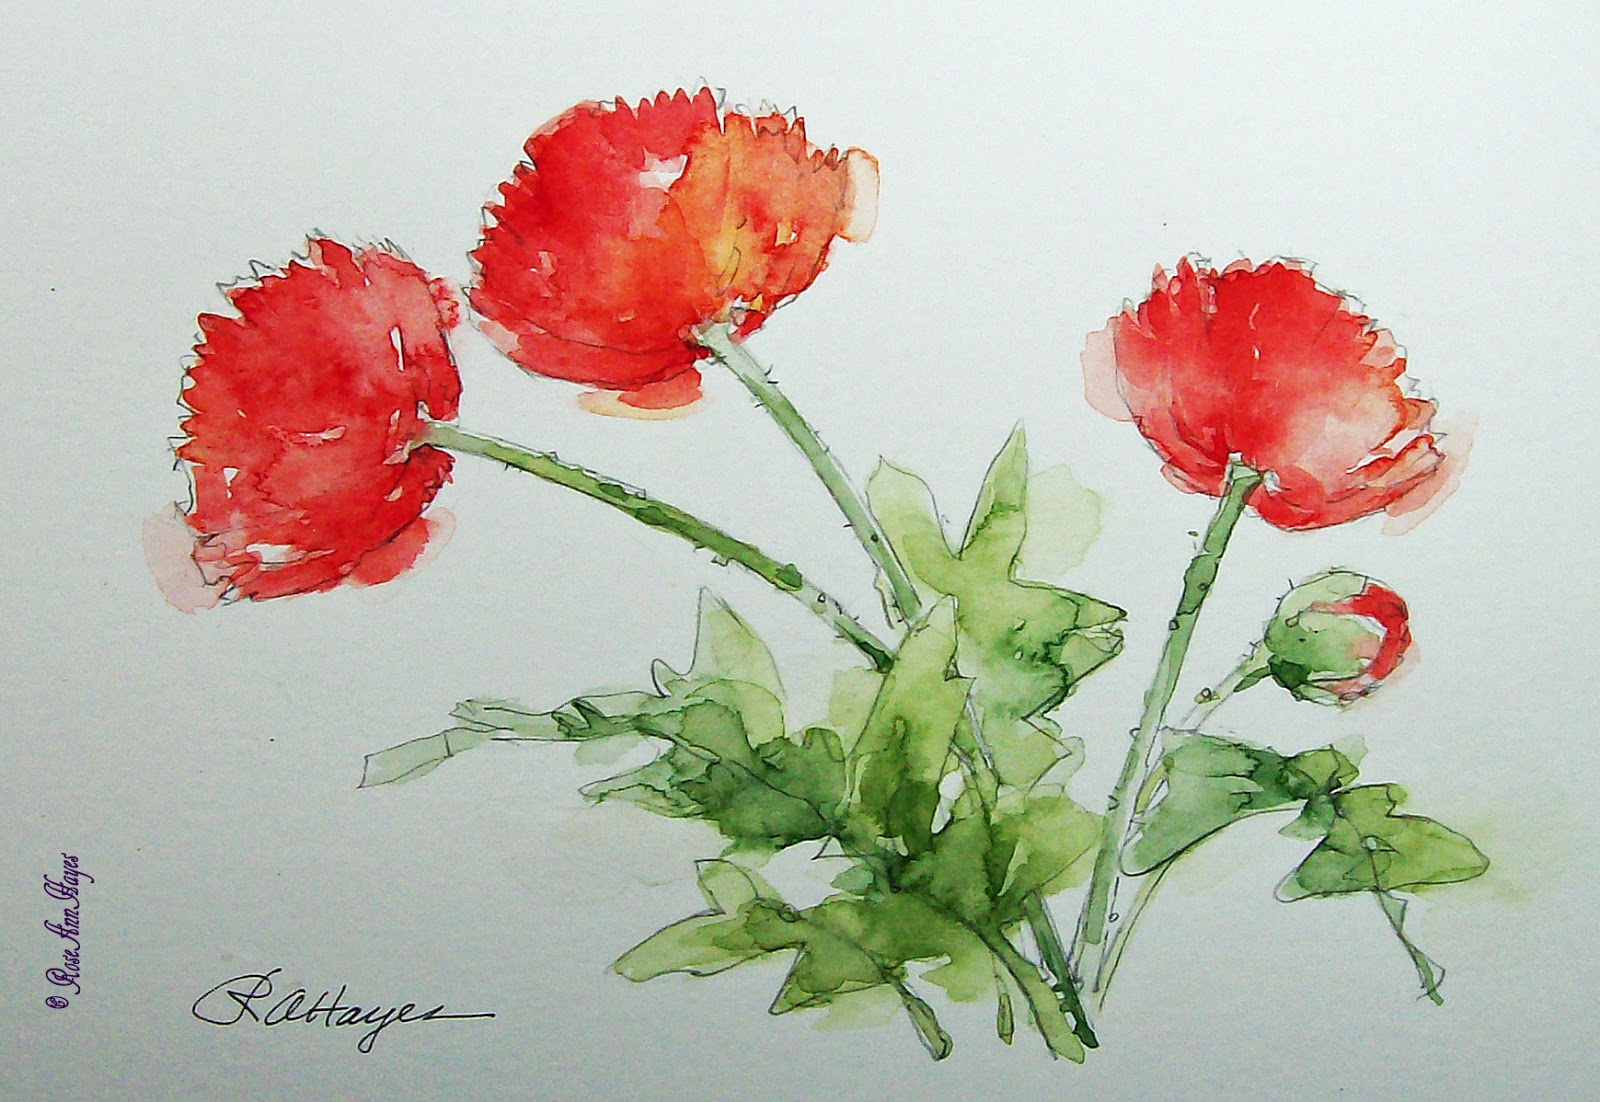 Watercolor Paintings by RoseAnn Hayes: Red Poppies Watercolor Painting